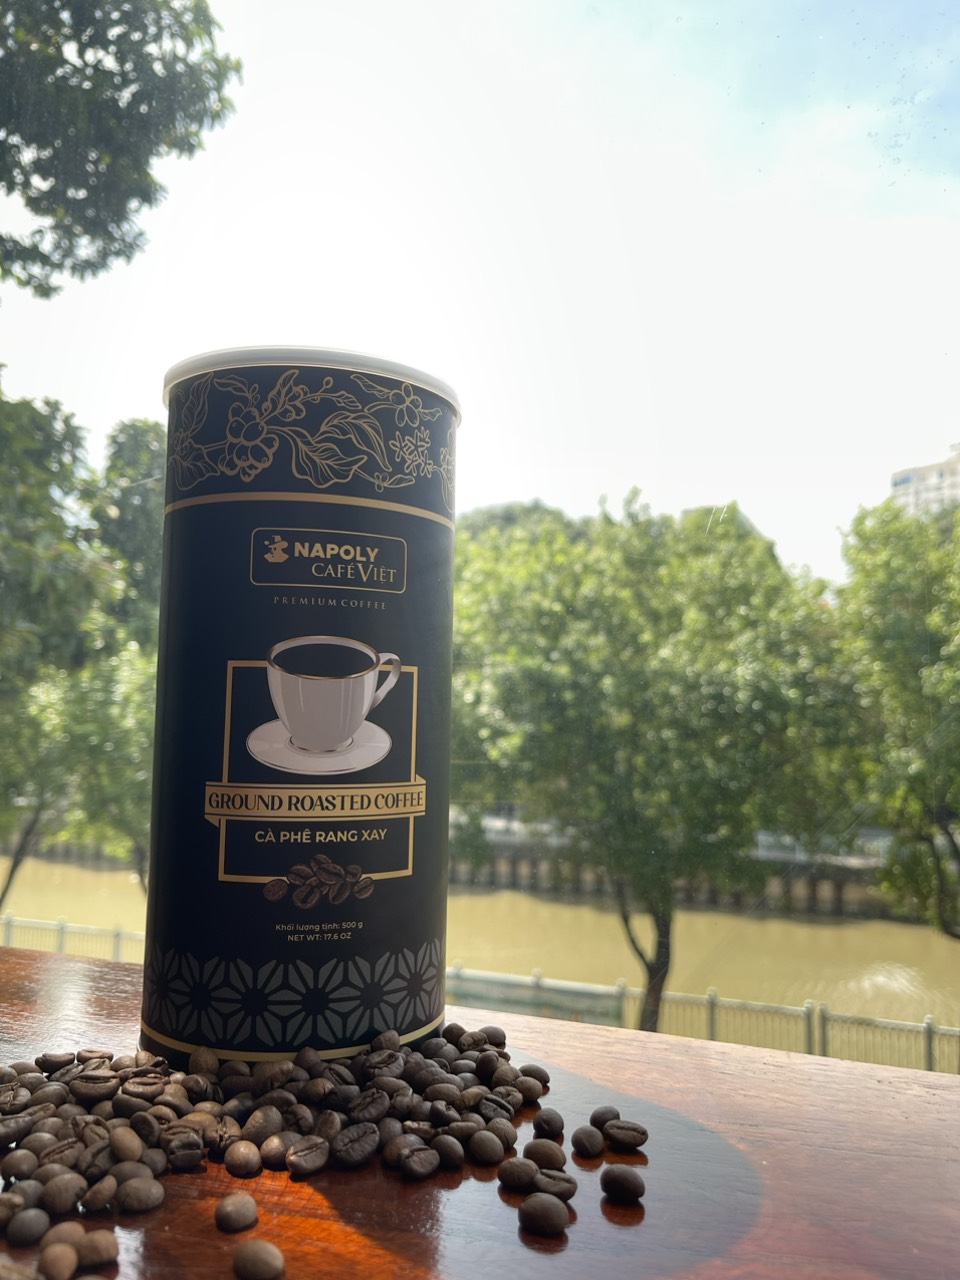 Cà phê cao cấp từ Arabica/Robusta Cầu Đất Rang Xay Napoli Premium Coffee 500g/lon - Cafe sạch, Vị Chua Thanh, Hậu Ngọt Dịu